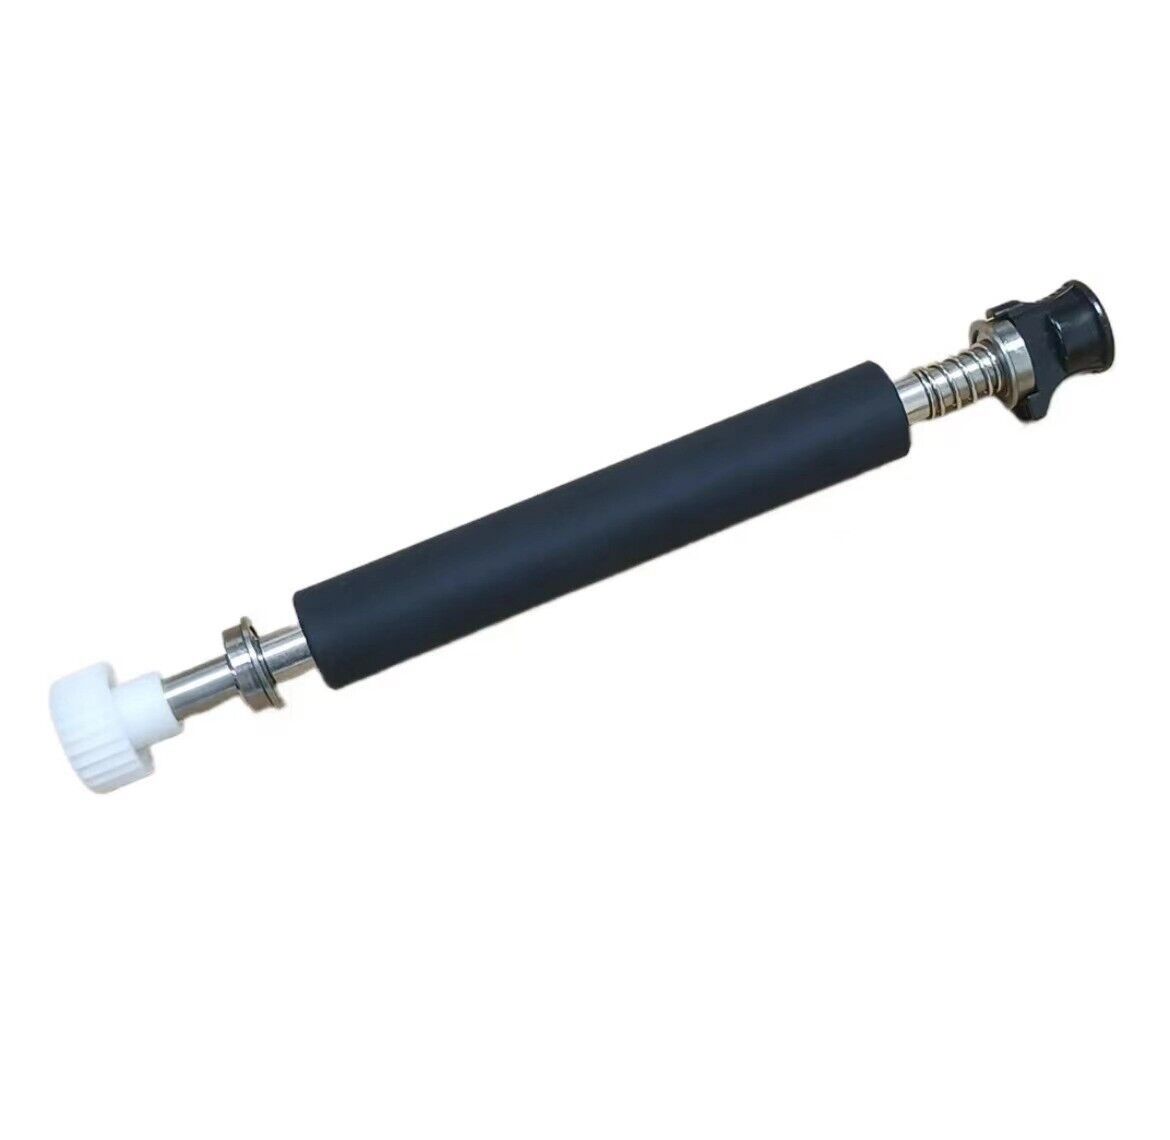 Kit Platen Roller for TSC MH240 MH340 Thermal Label Printer 98-0600008-00LF